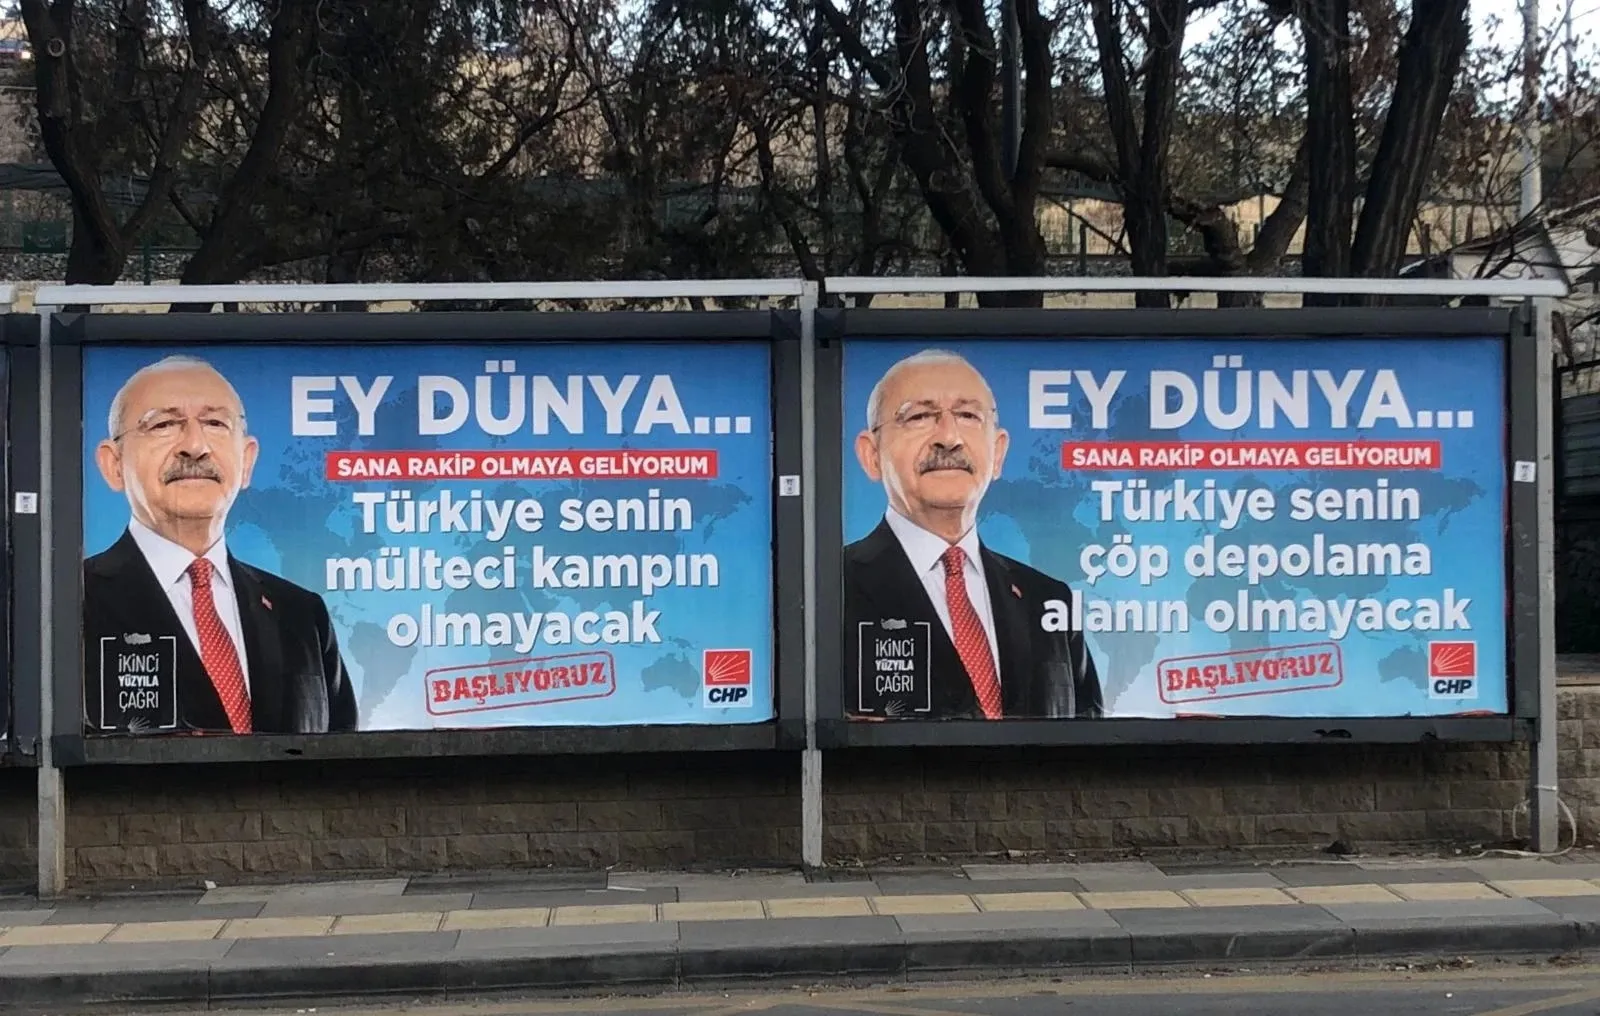 حزب "الشعب الجمهوري" يُطلق حملة عنصرية لترحيل اللاجئين السوريين في تركيا